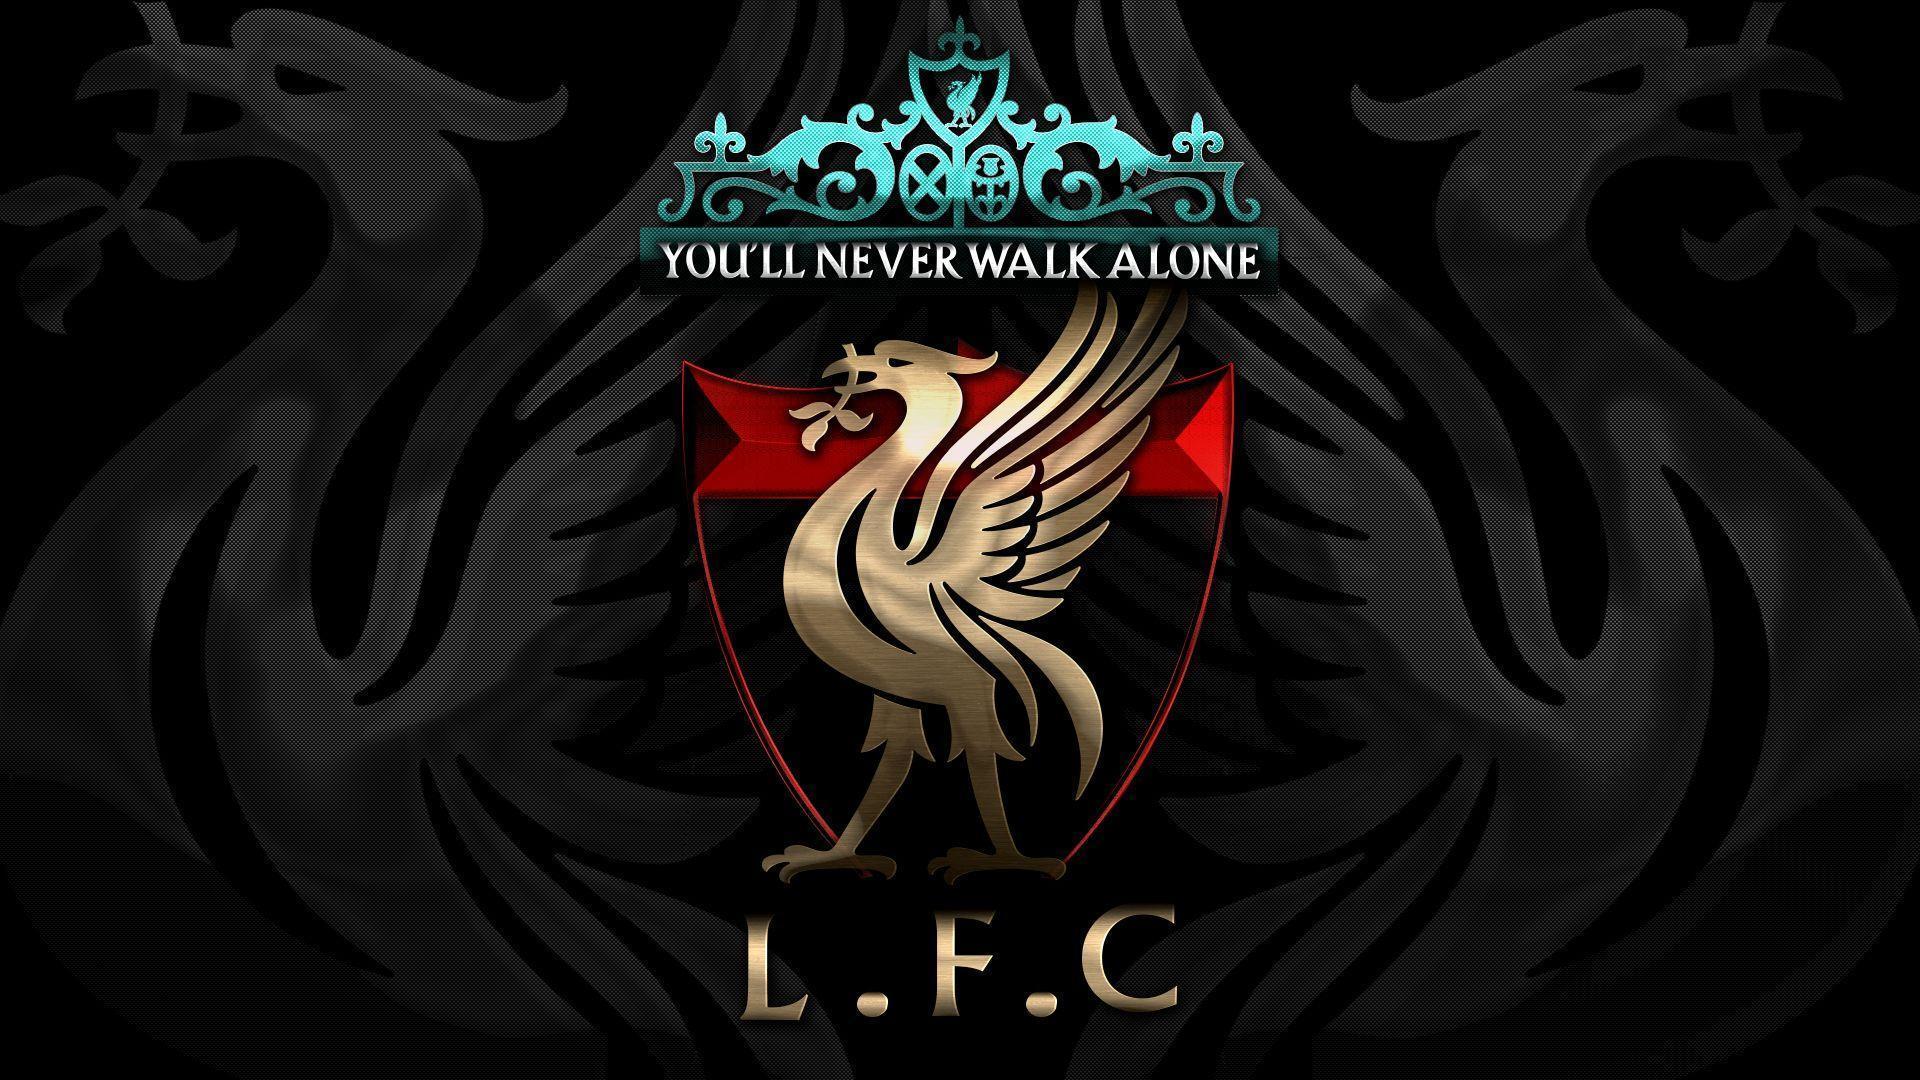 Liverpool Desktop Wallpaper